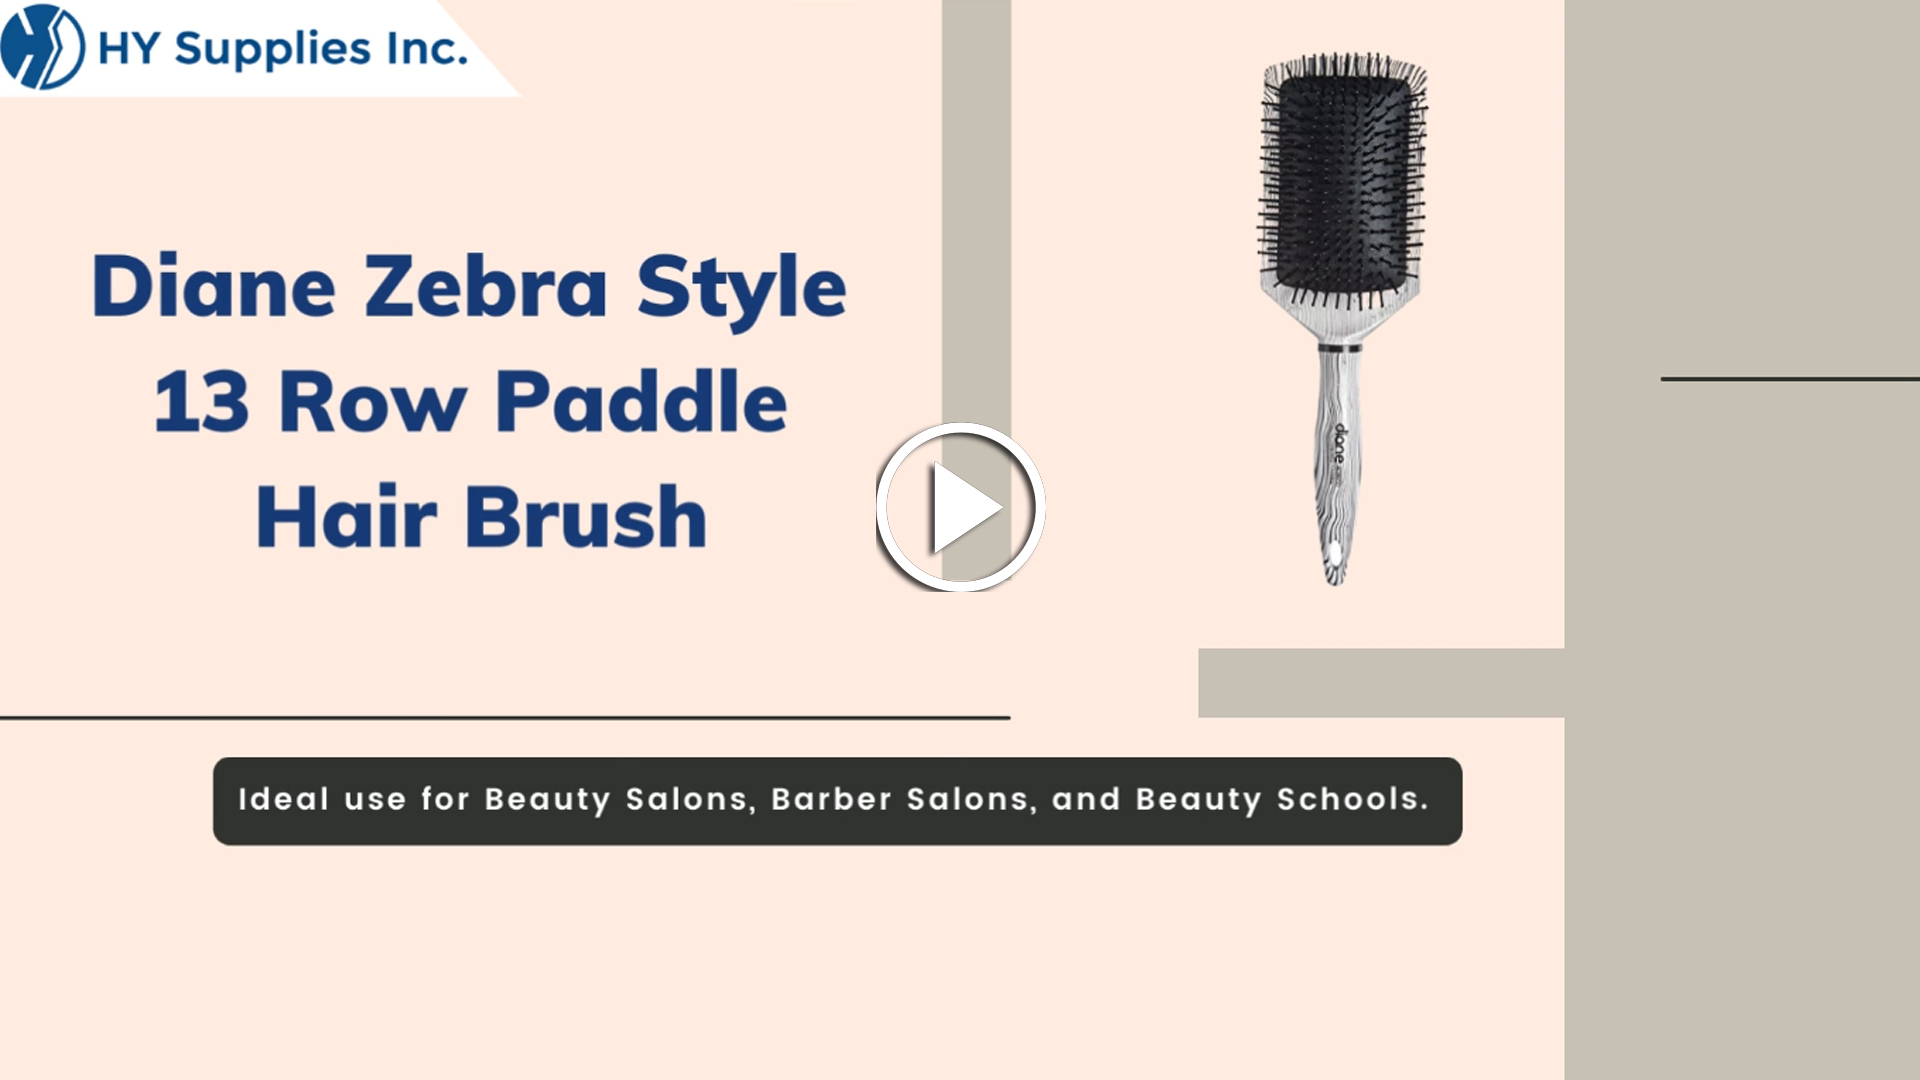 Diane Zebra Style 13 Row Paddle Hair Brush